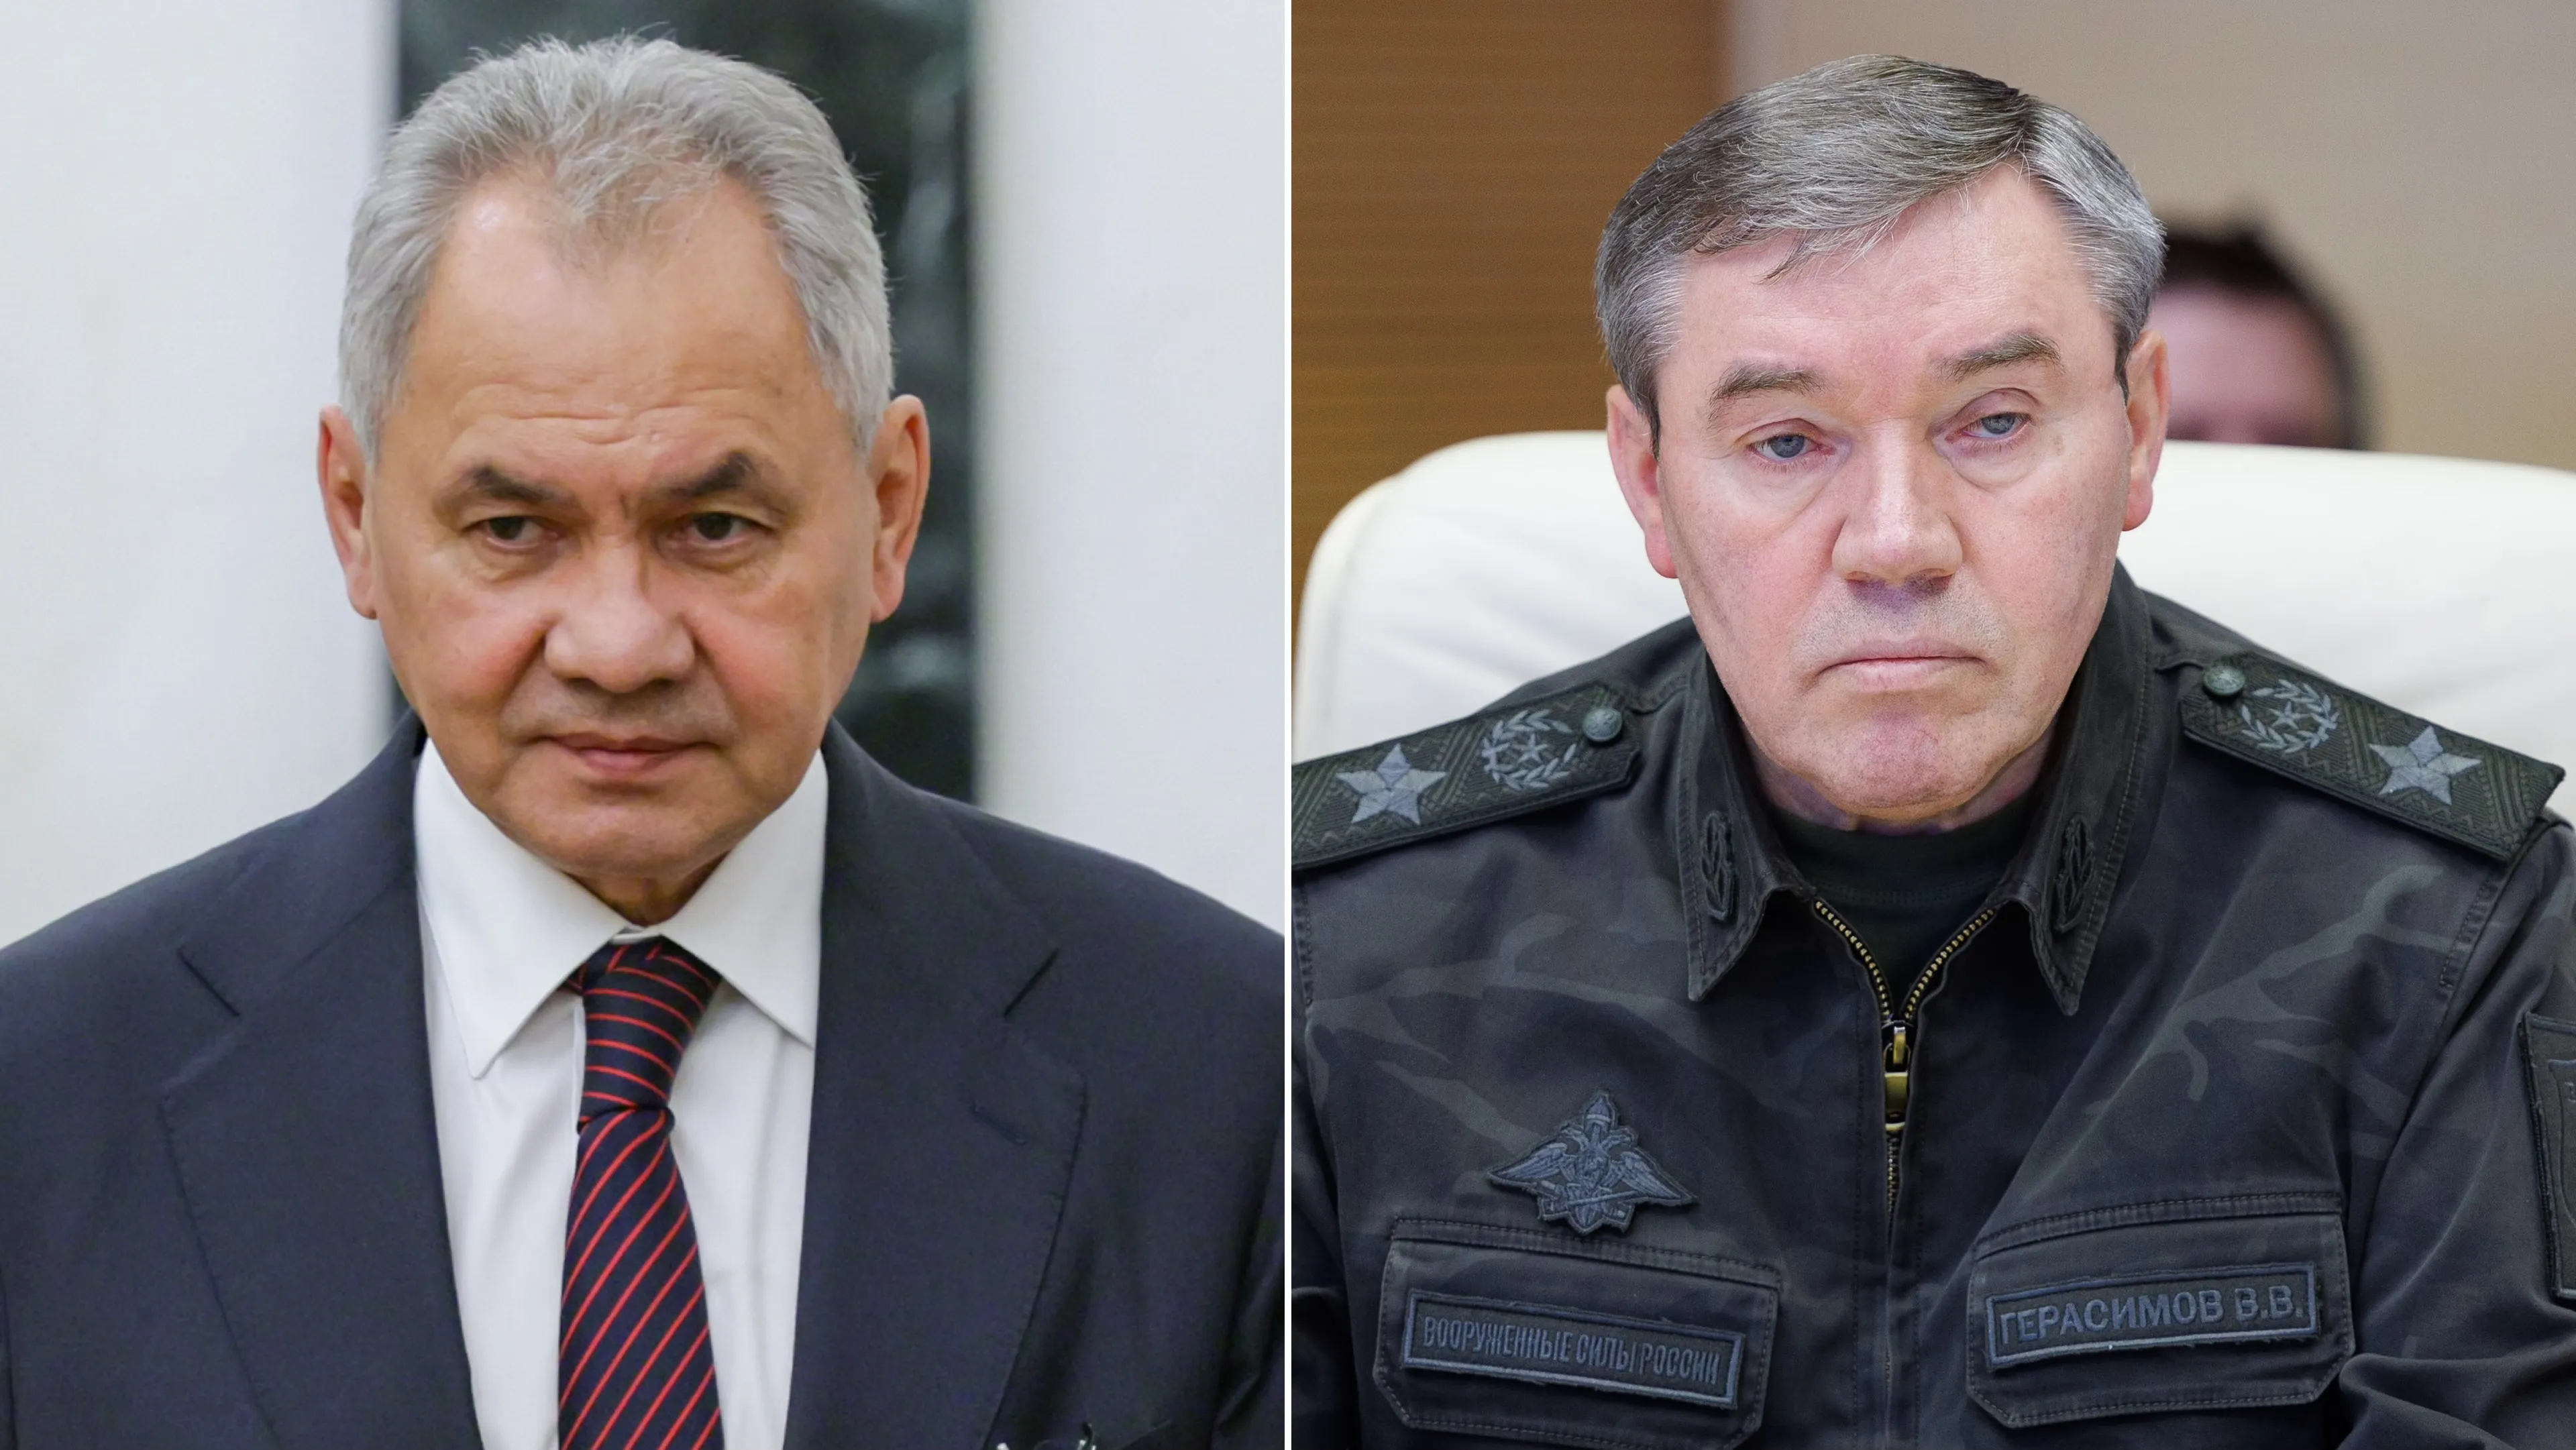 "Получают зарплату, а дел никаких нет": Адвокат объяснила, почему МУС выдал ордер на "арест" Шойгу и Герасимова